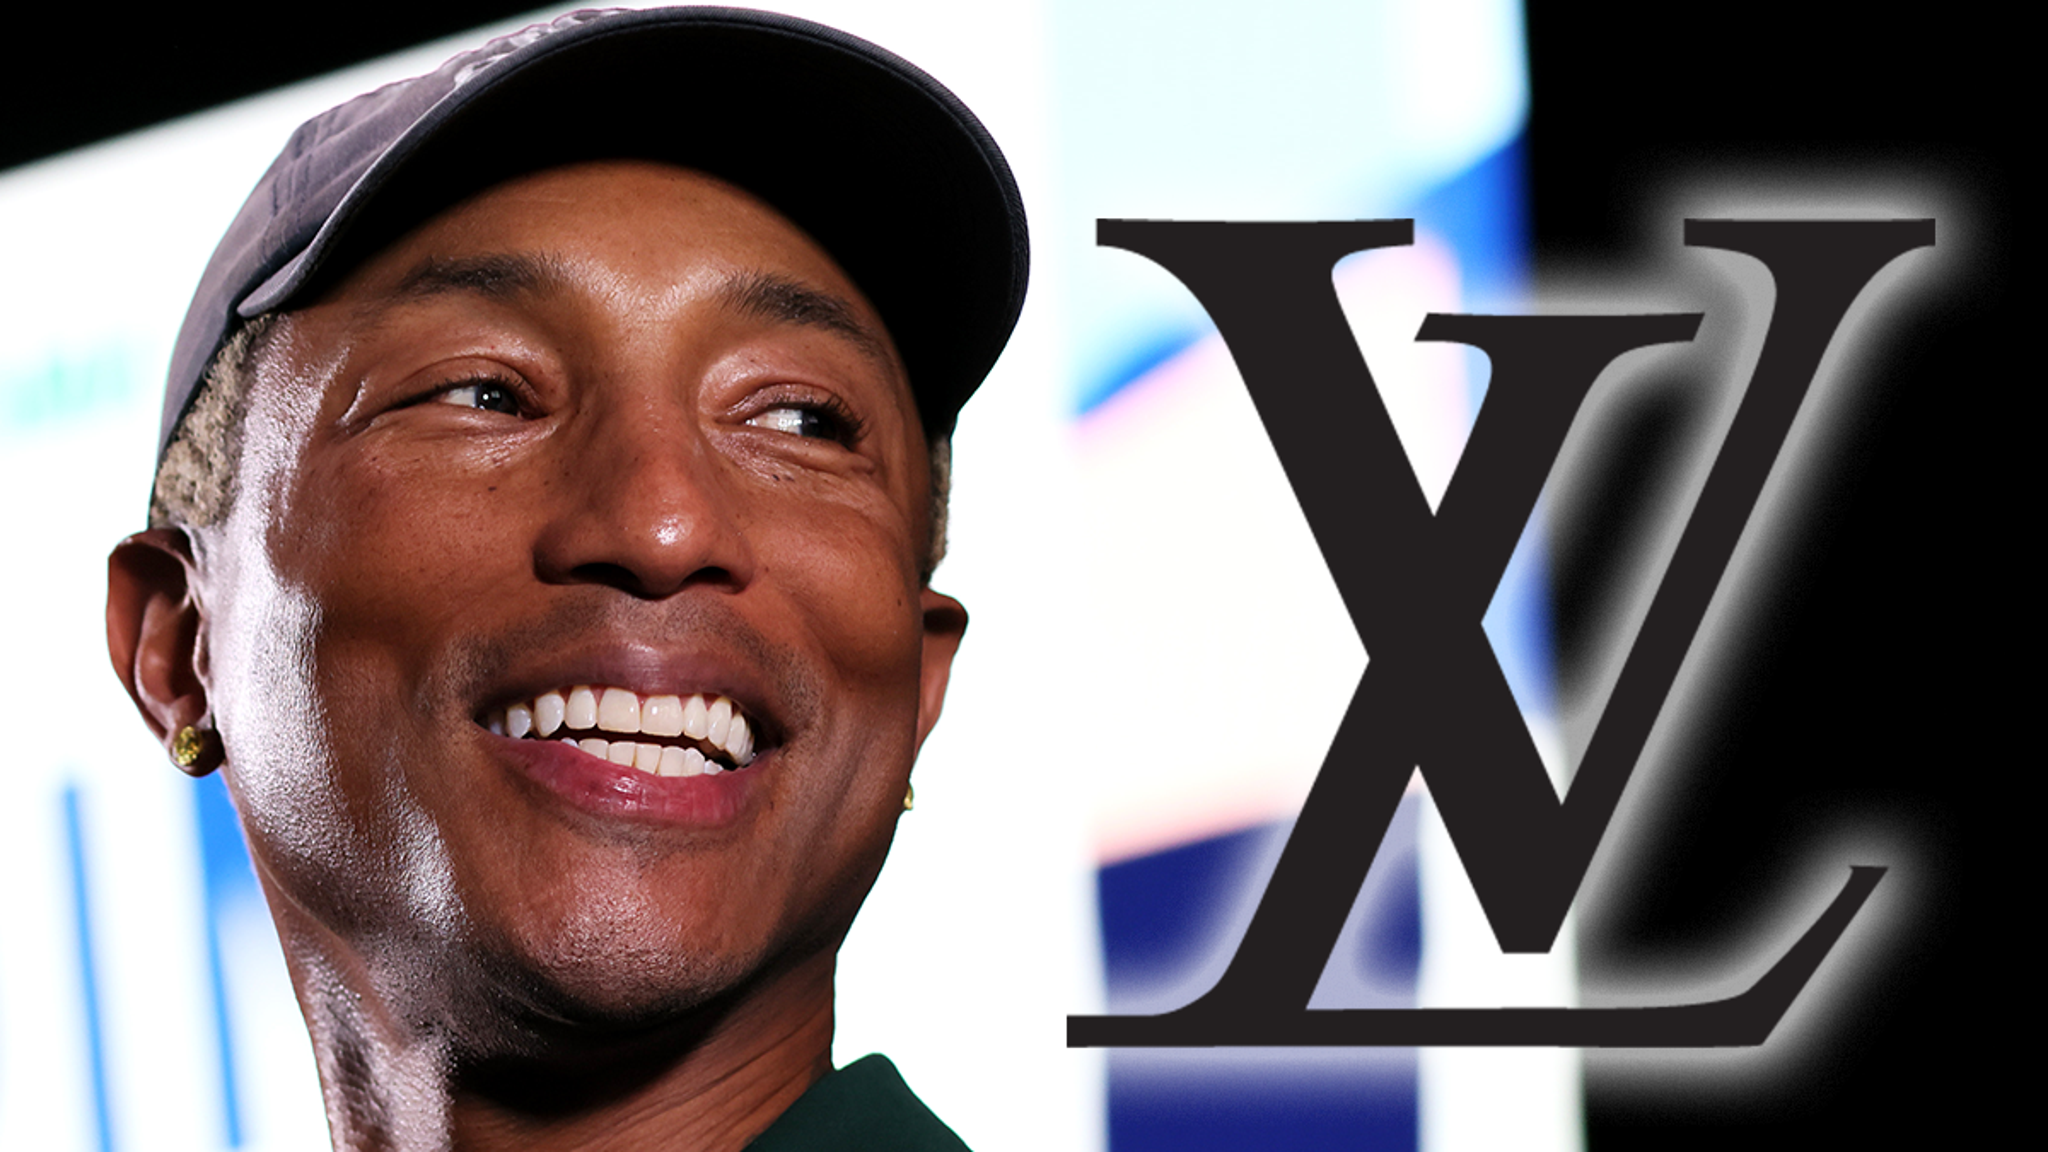 Pharrell Williams The New Men's Creative Director. - The Garnette